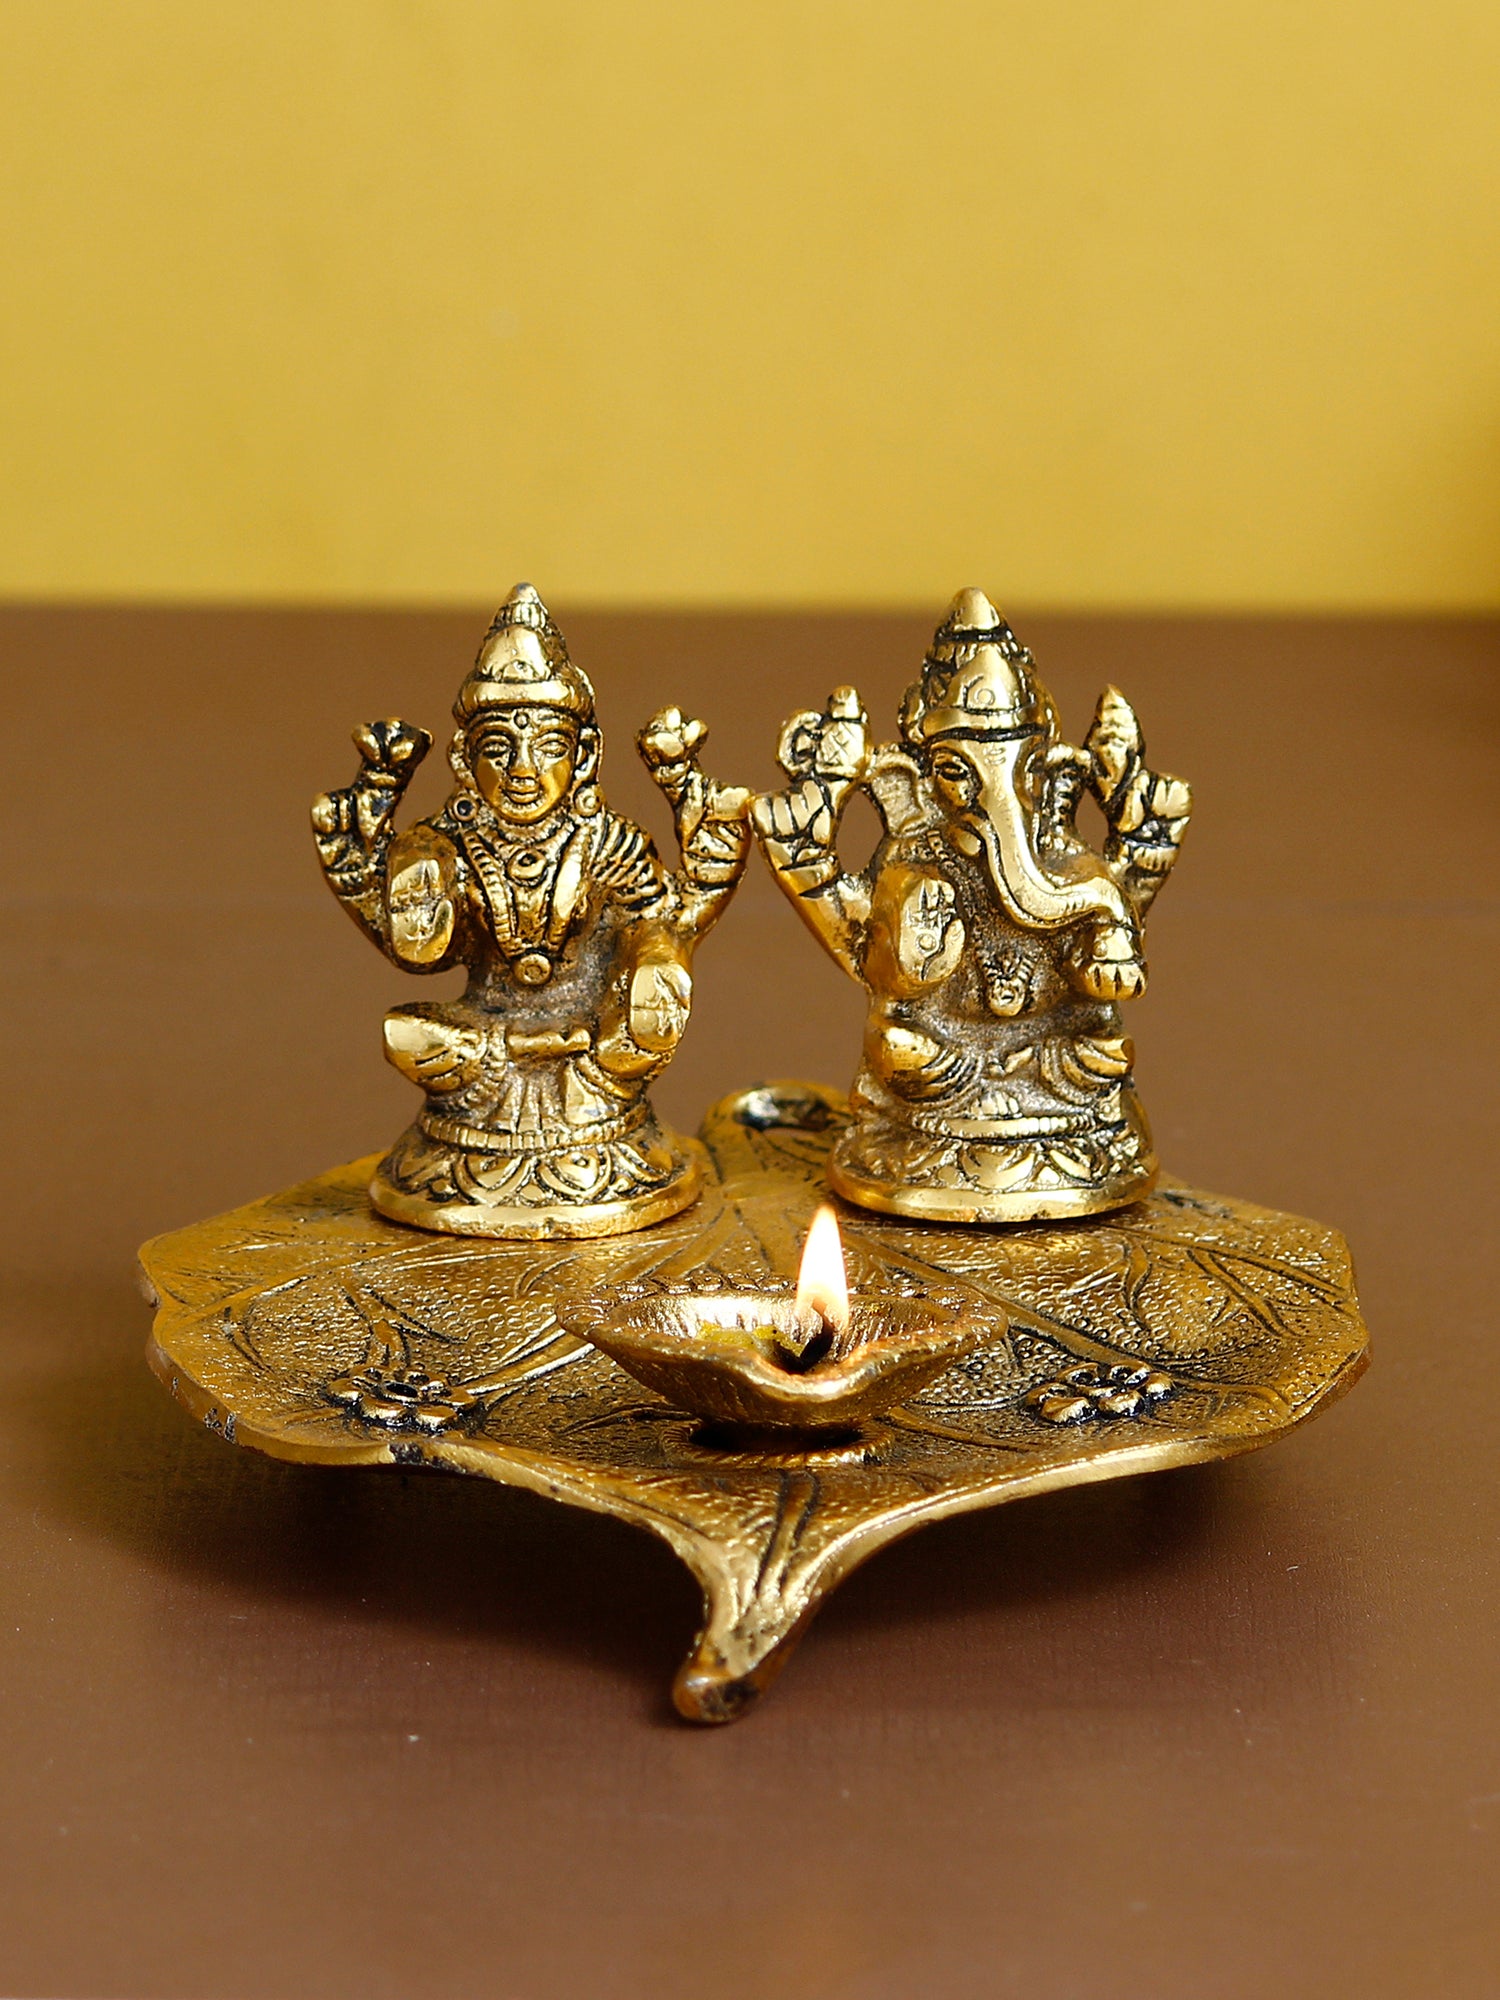 Golden Metal Handcrafted Laxmi Ganesha Idols with Diya on Leaf